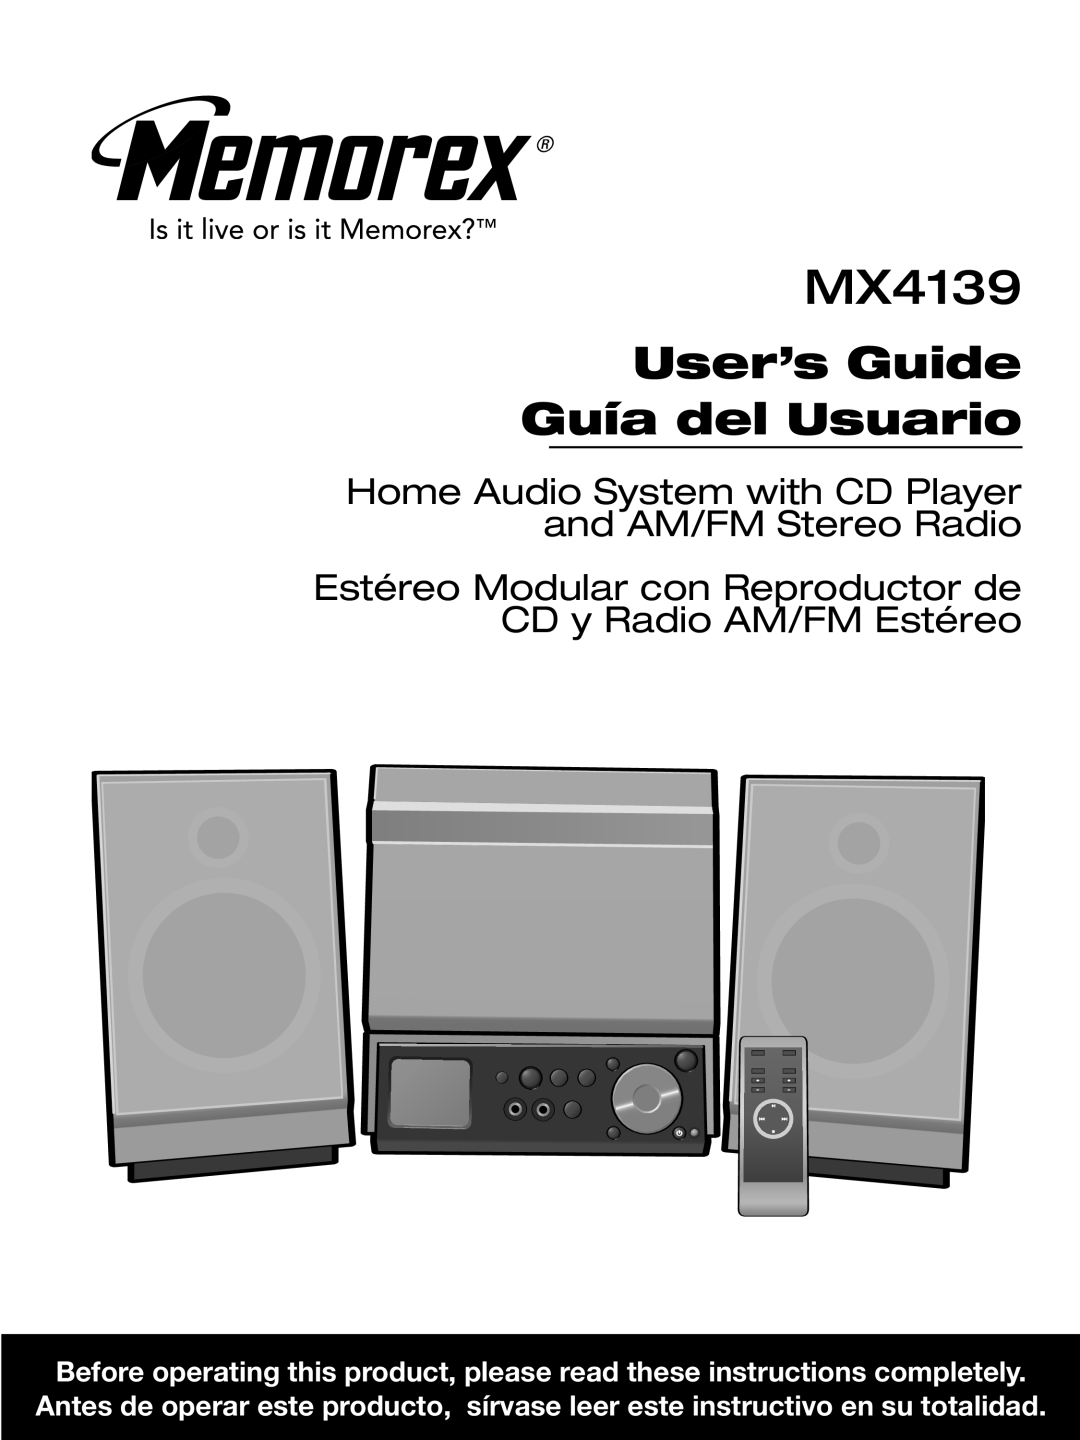 Memorex MX4139 manual User’s Guide Guía del Usuario 